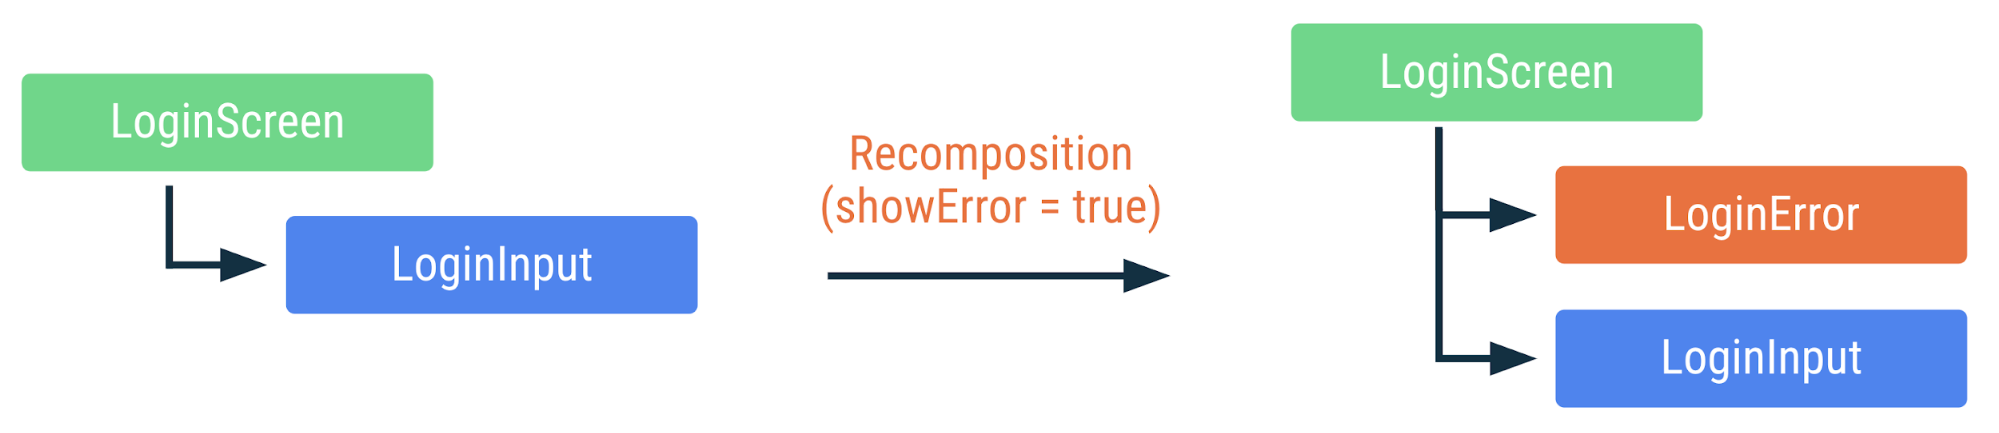 نمودار نشان می دهد که چگونه کد قبلی در صورت تغییر پرچم showError به true دوباره ترکیب می شود. LoginError composable اضافه شده است، اما دیگر composable ها دوباره ساخته نمی شوند.